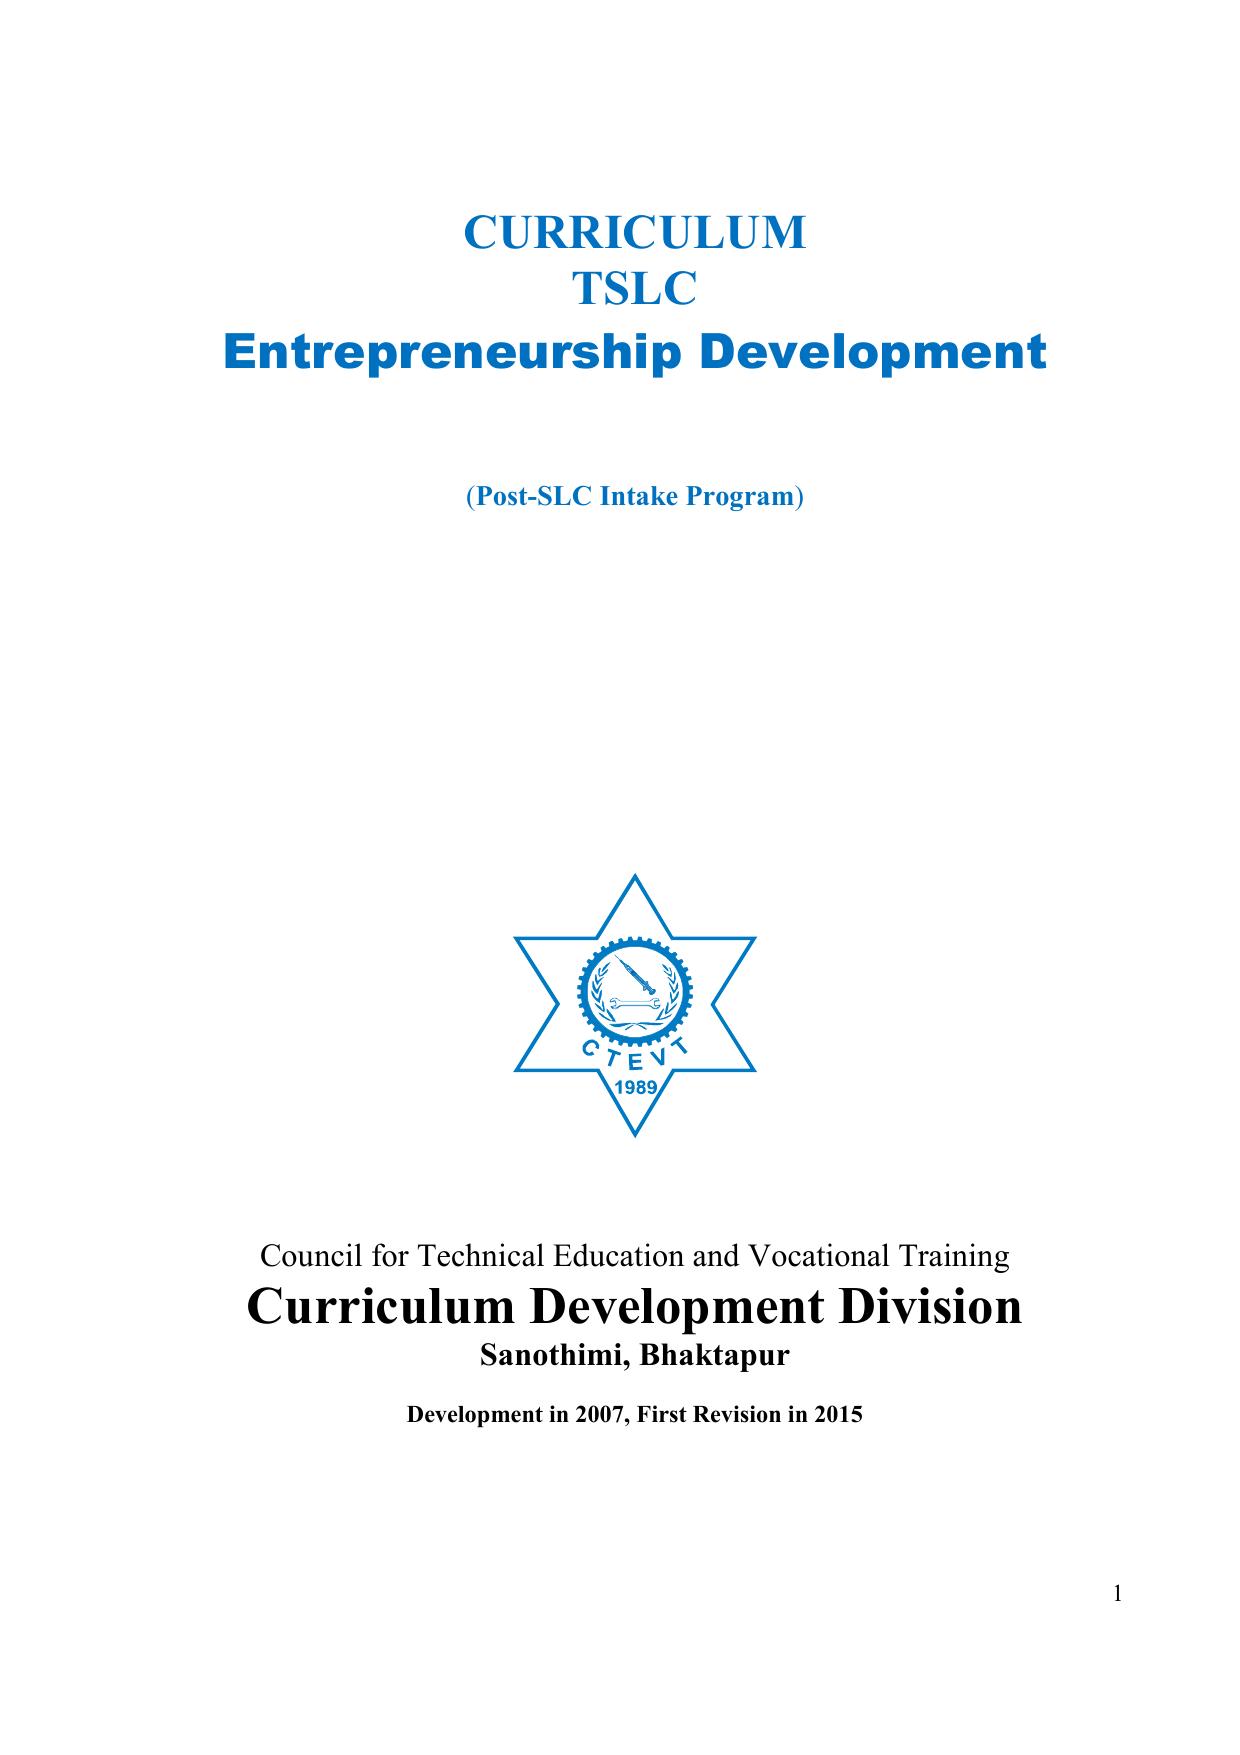 TSLC in Enterprenuership Development, 2015